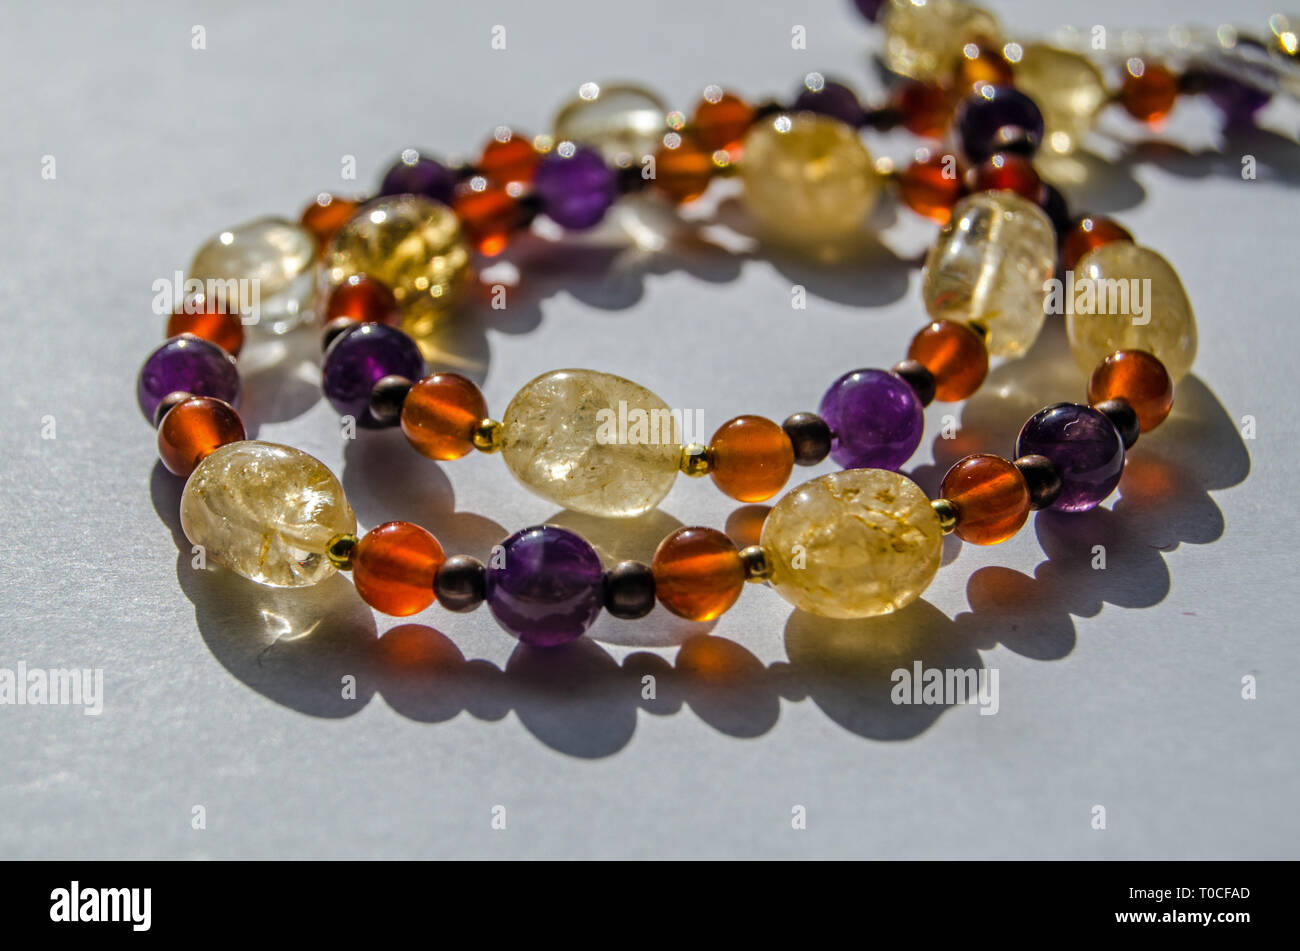 Armband und Halskette Hand gemacht mit bunten Halbedelsteinen Edelstein Perlen einschließlich gelber Citrin, Amethyst lila und orange Karneol. Stockfoto